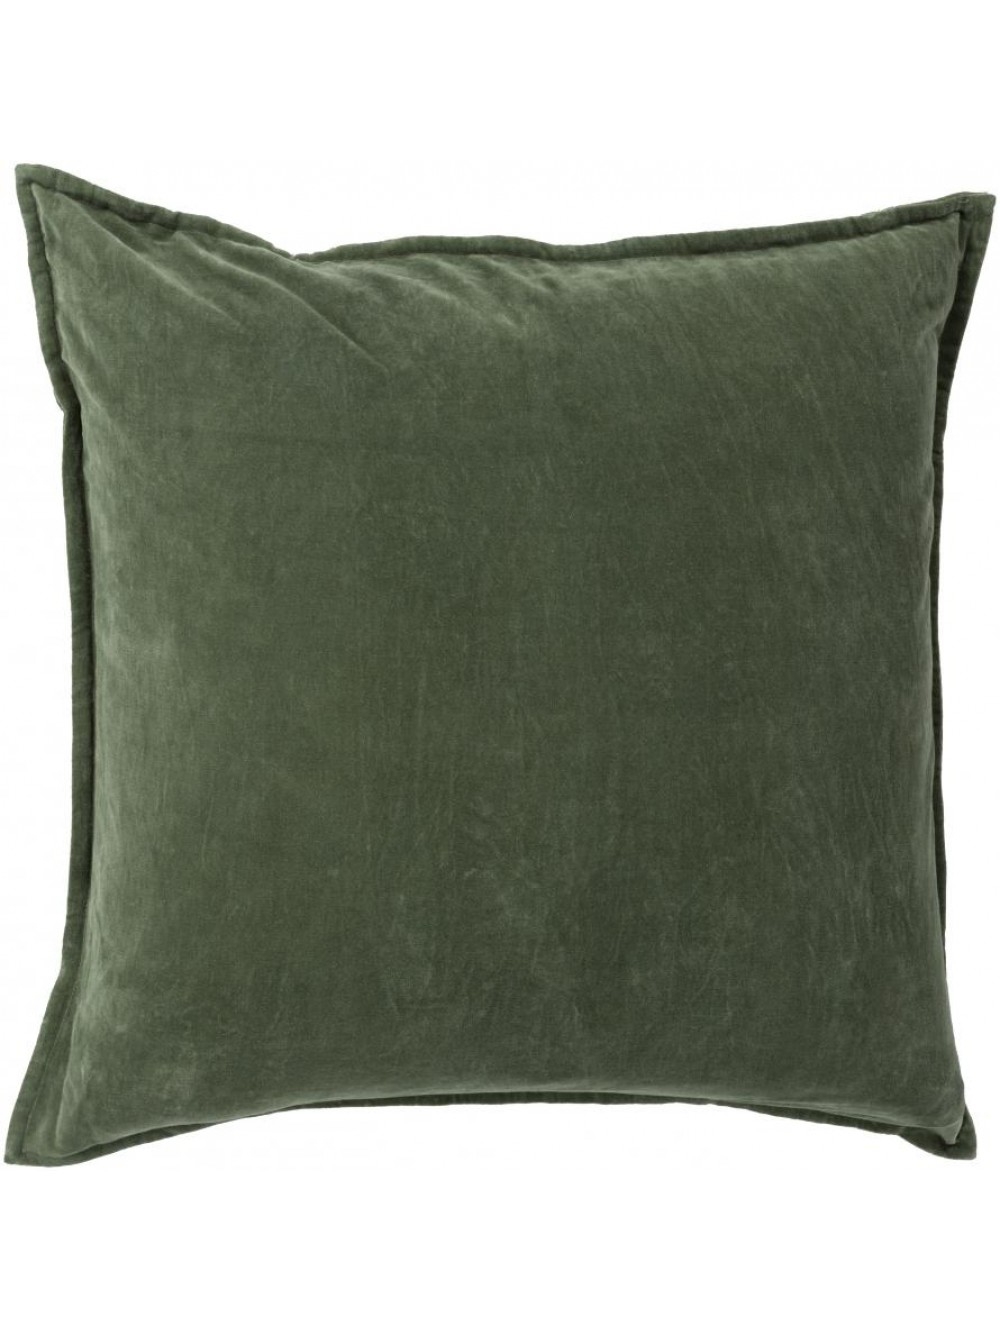 Maxen Pillow -  Dark Moss  - 20x20- Polyester Filled - Image 0